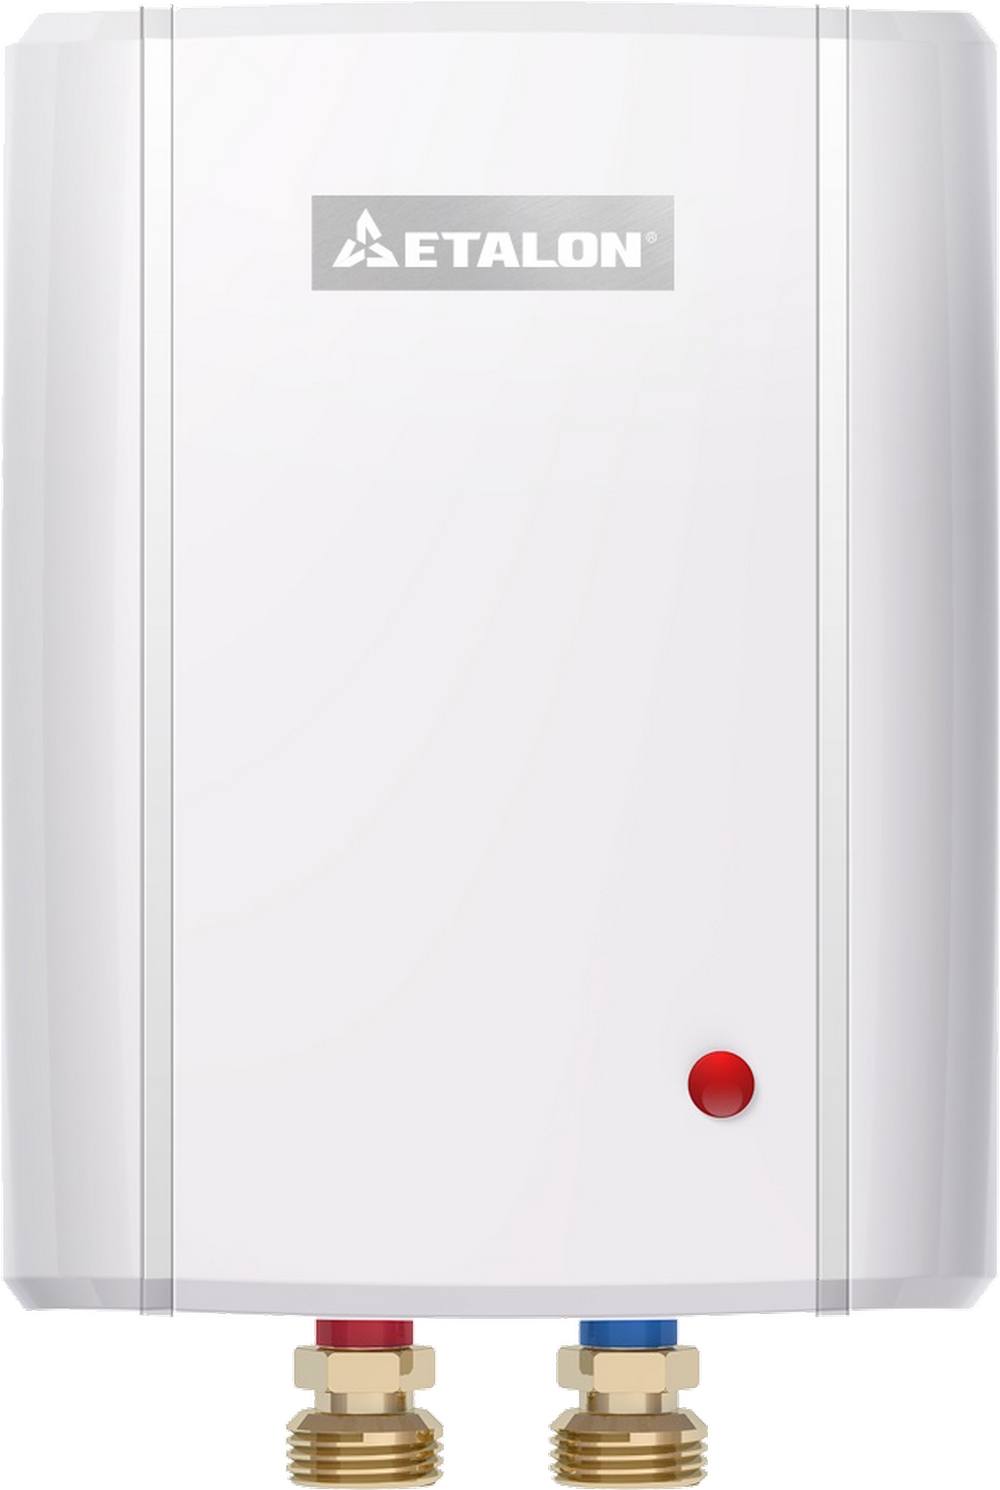 Проточный водонагреватель Etalon Plus 4500 характеристики - фотография 7